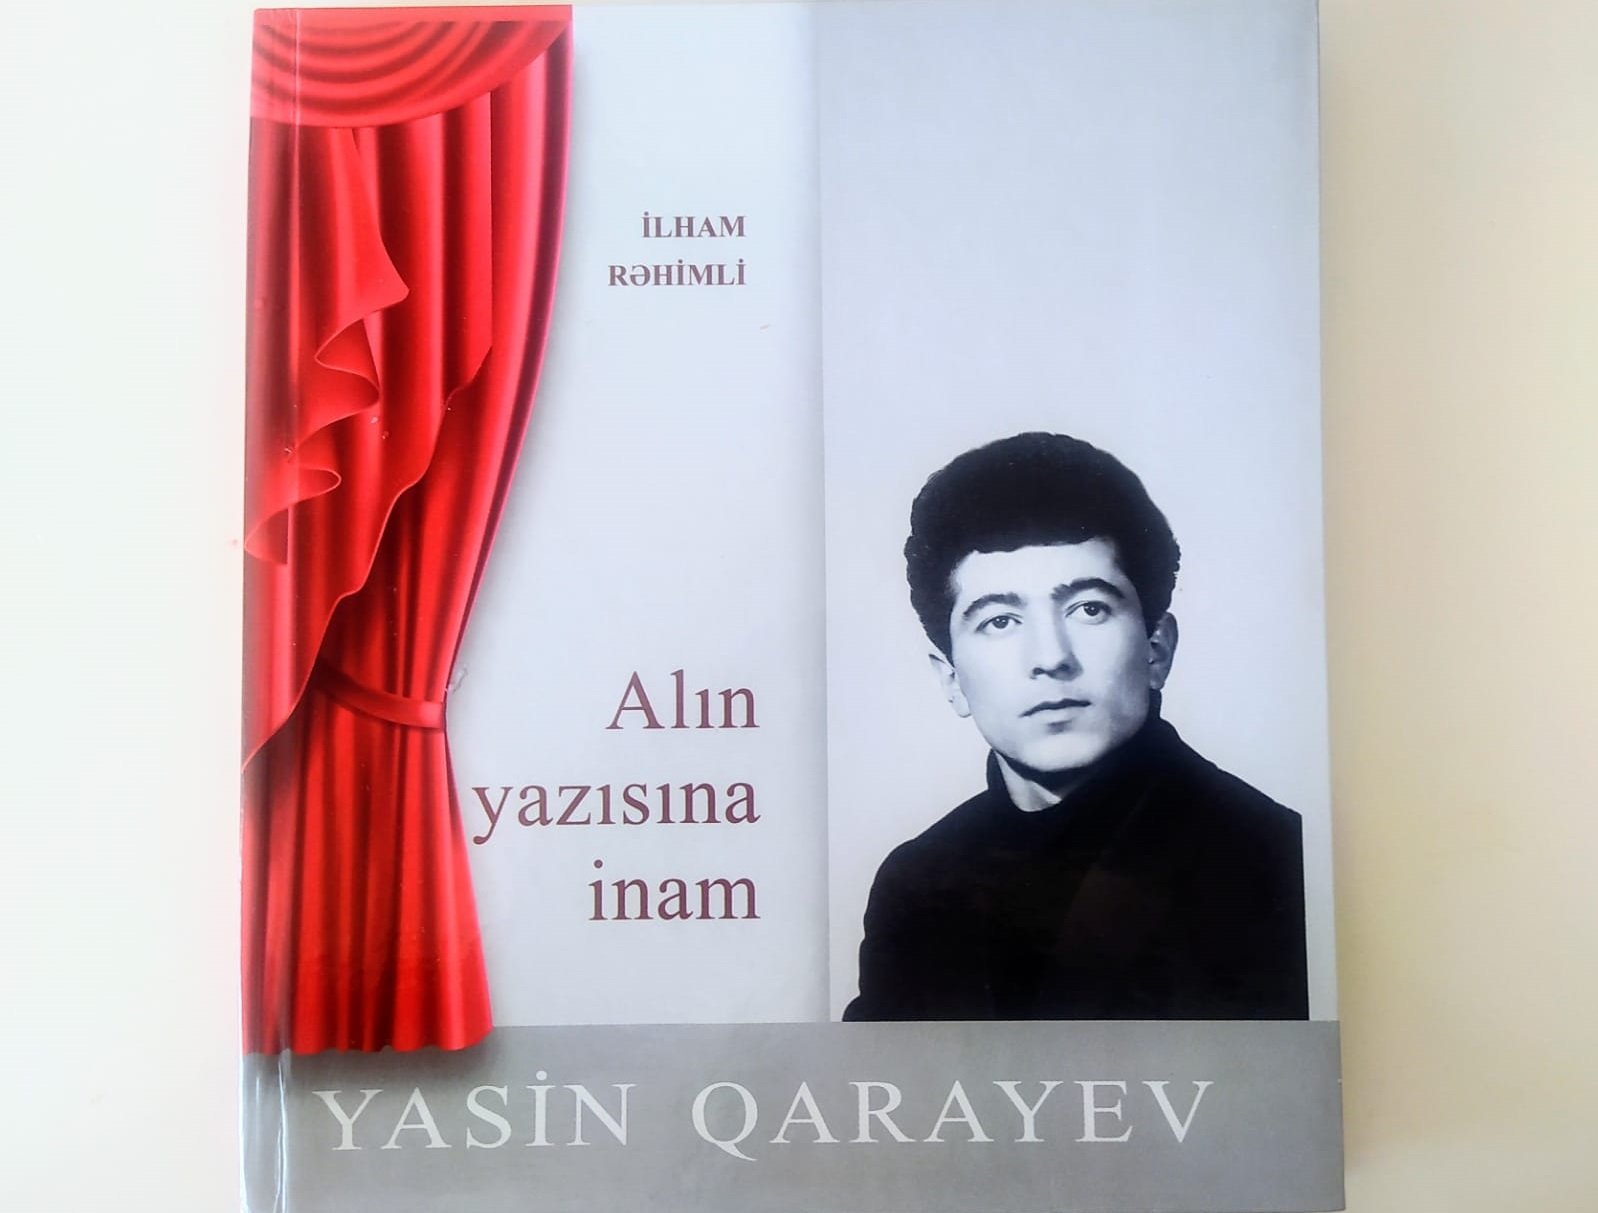 Xalq artisti Yasin Qarayevin kitabının təqdimatı keçiriləcək